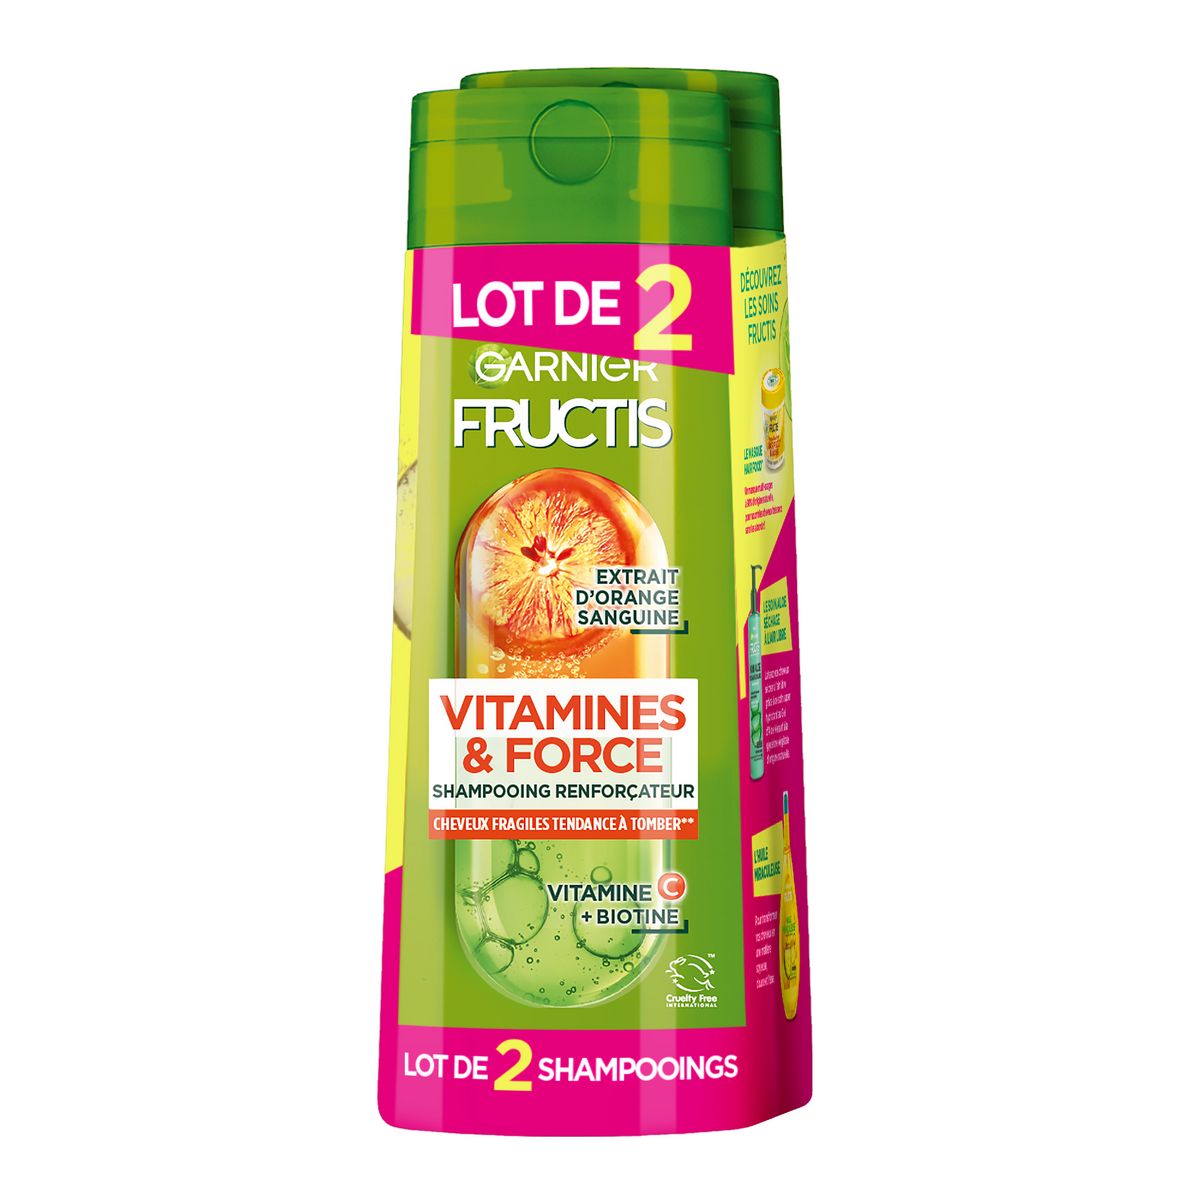 FRUCTIS Vitamines et force Shampooing renforçateur à la vitamine C et biotine pour cheveux fragiles 2x250ml